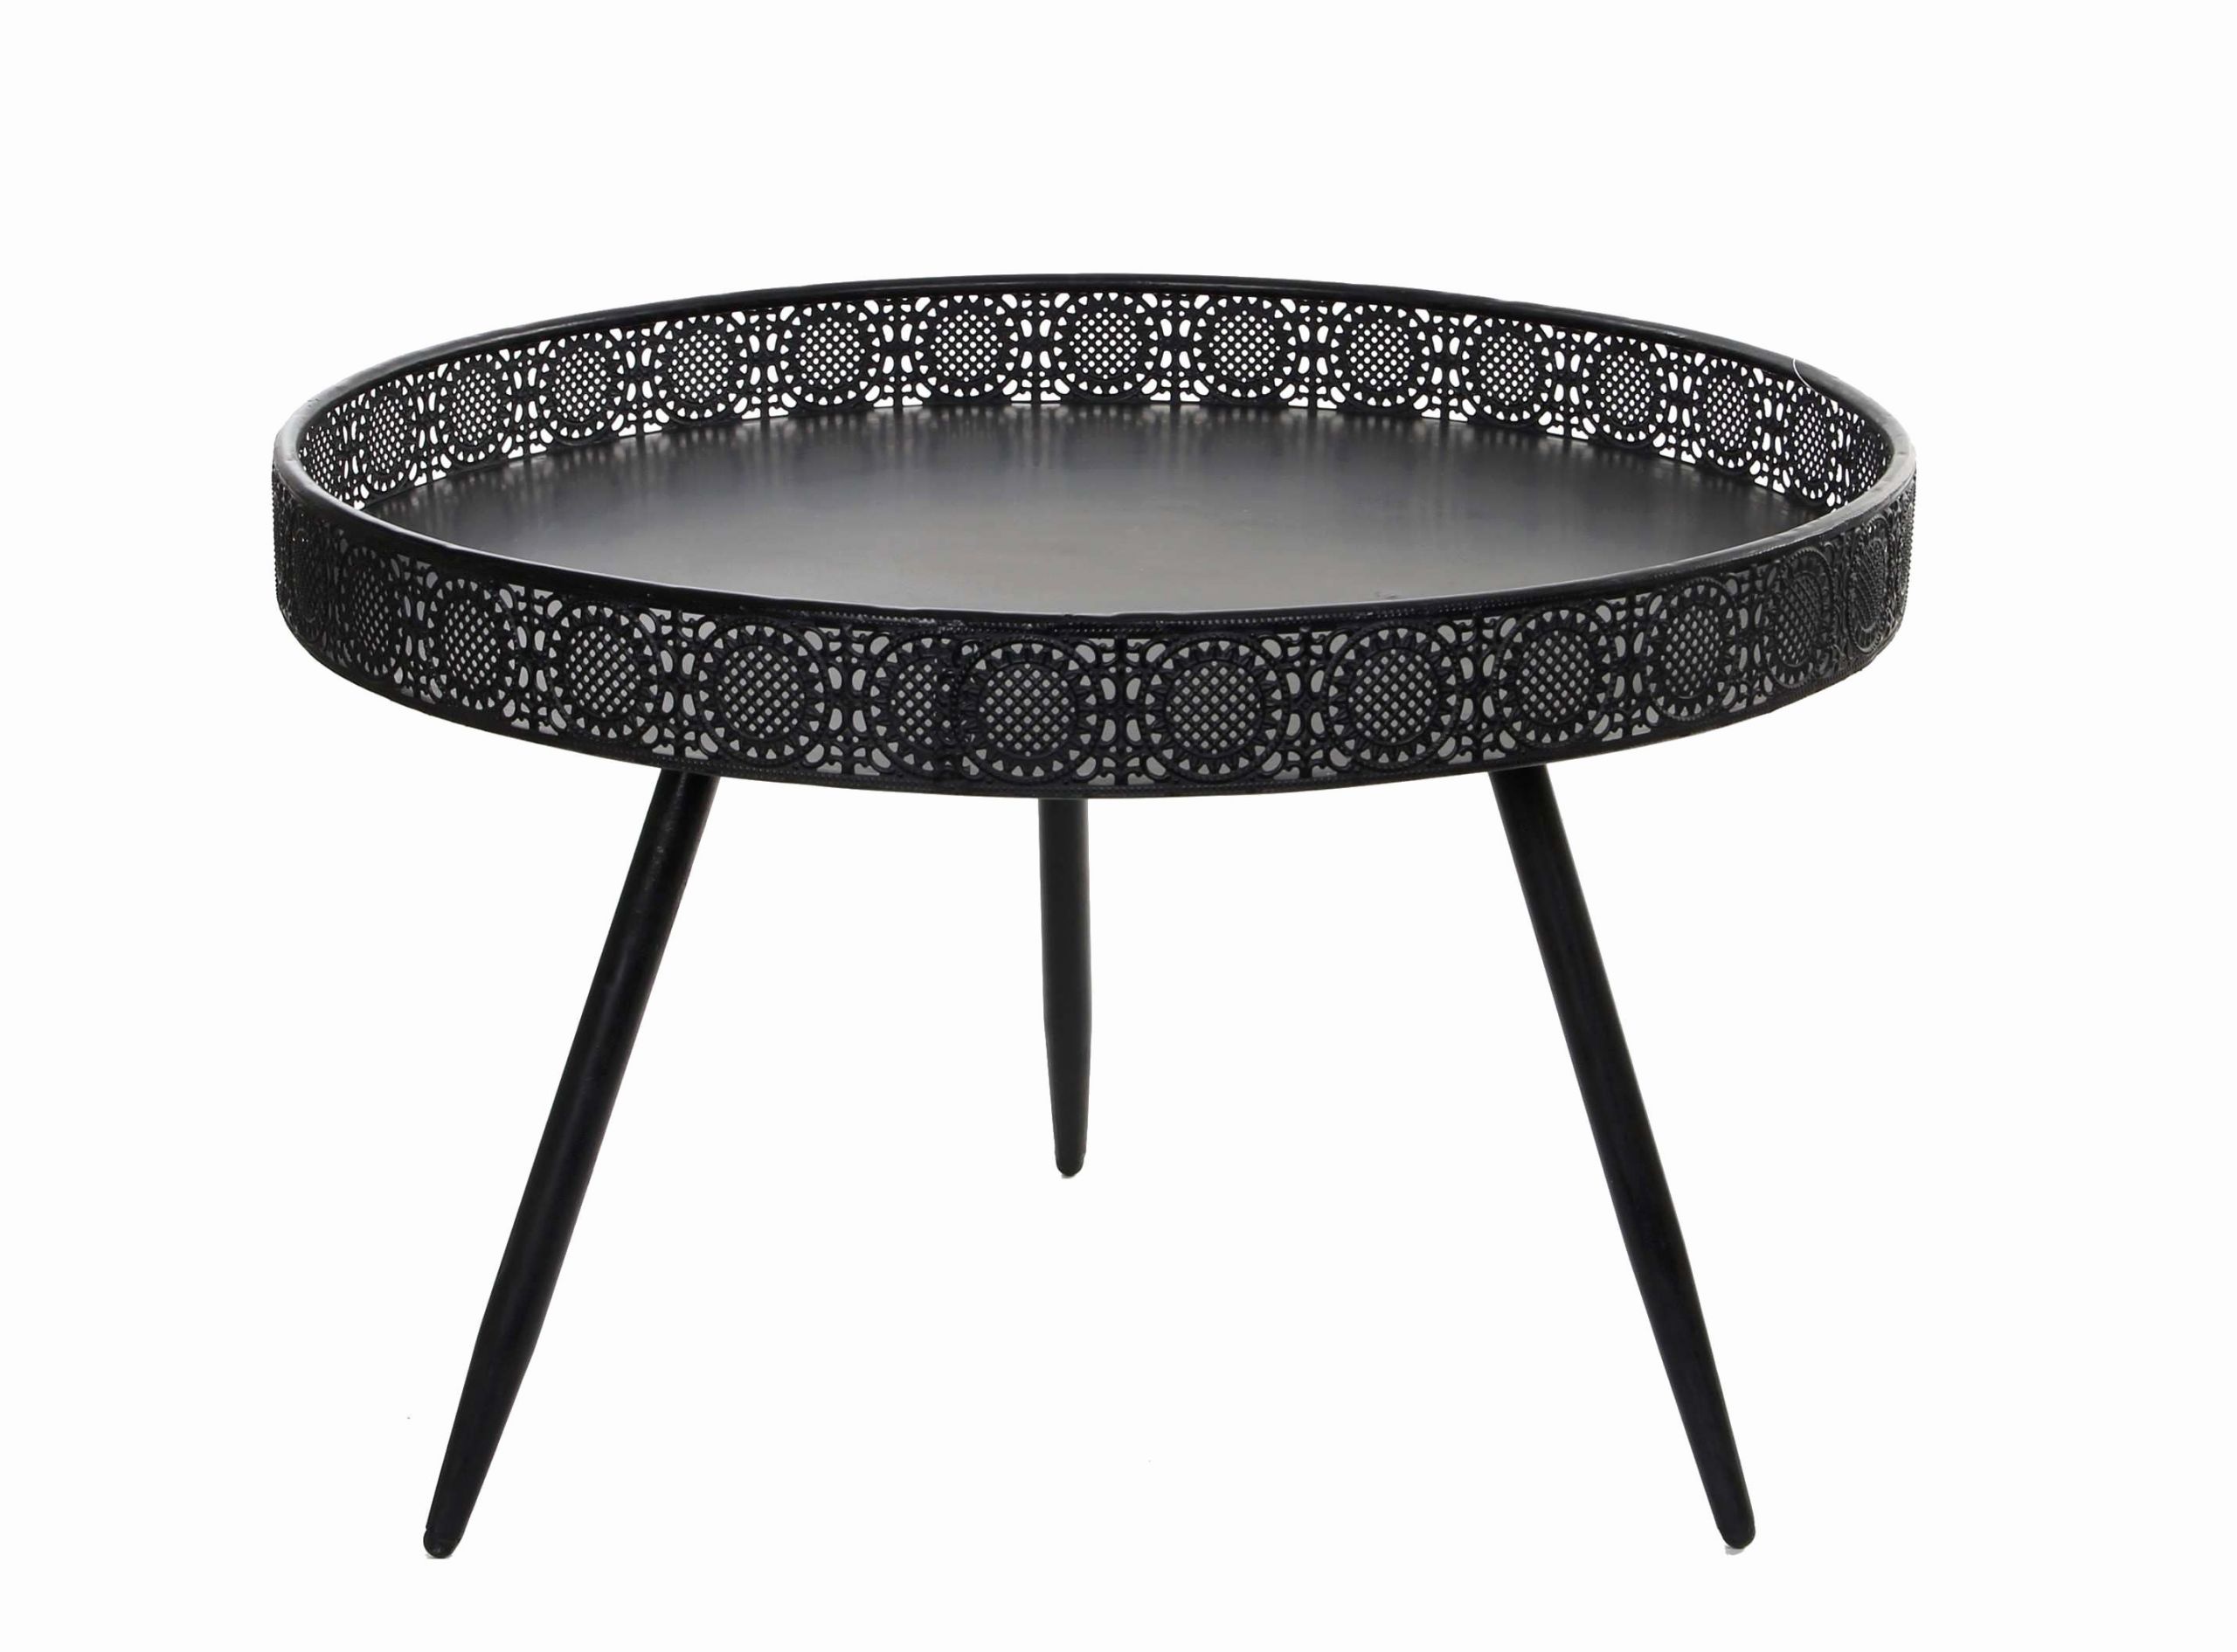 Mobilier Exterieur Inspirant Pied De Table Metal Design Beau Elégant Table Basse Ronde